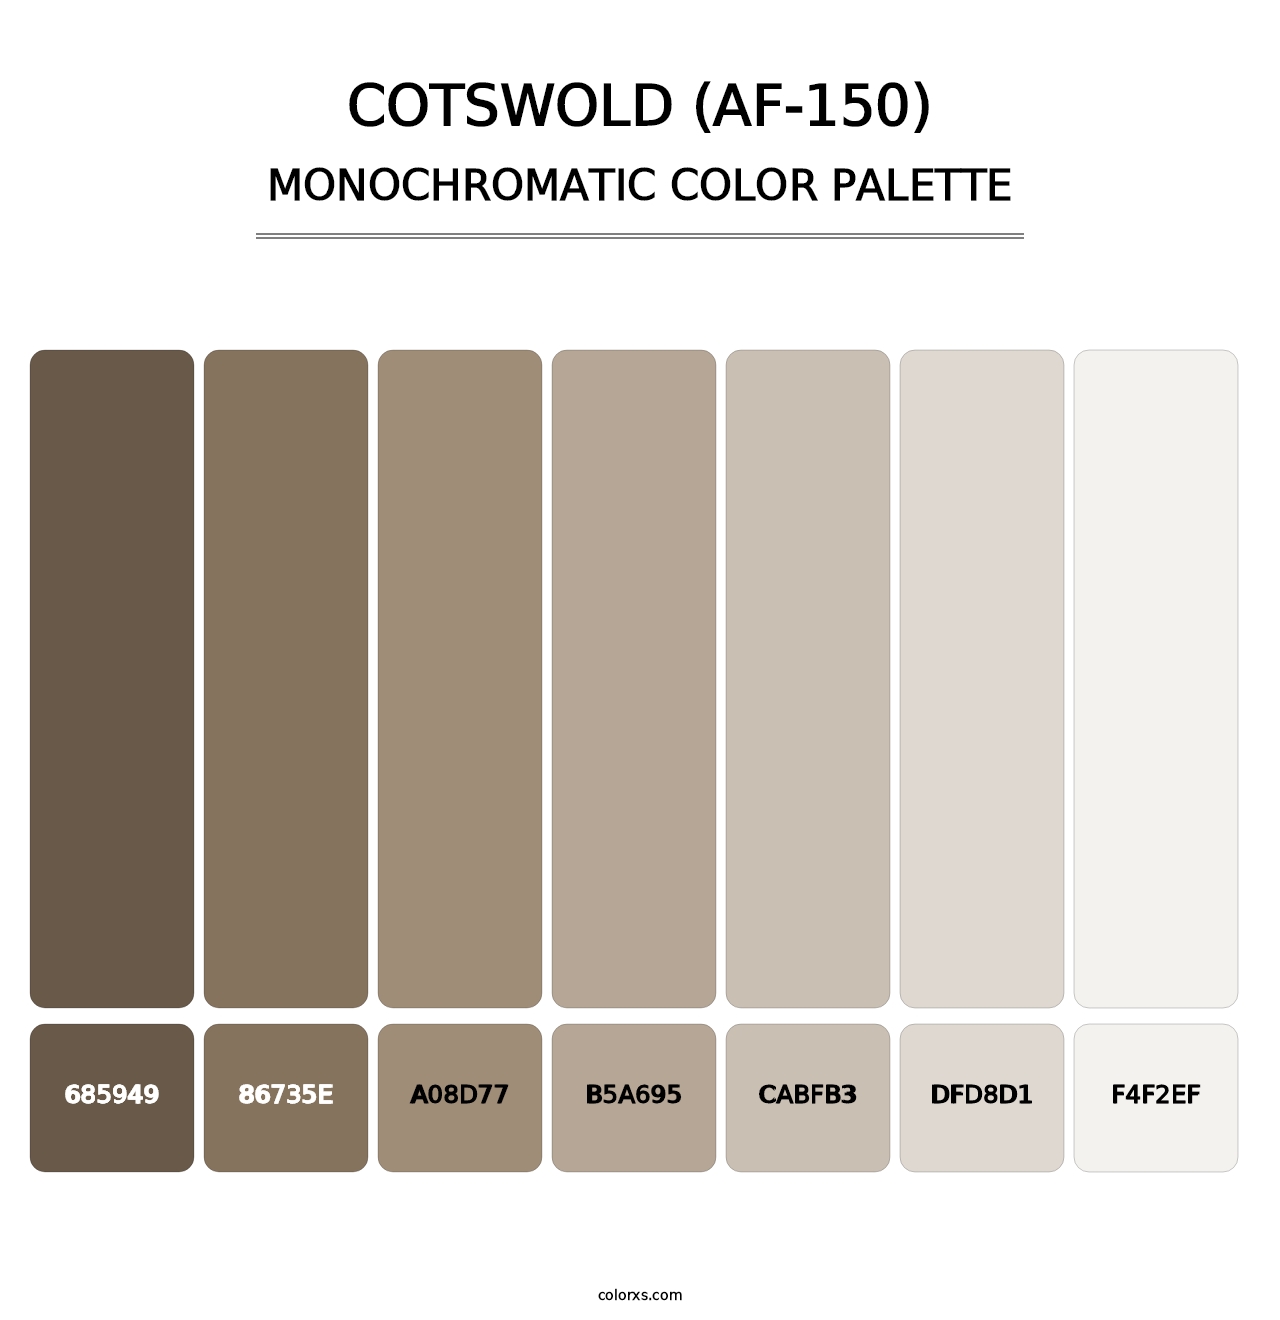 Cotswold (AF-150) - Monochromatic Color Palette